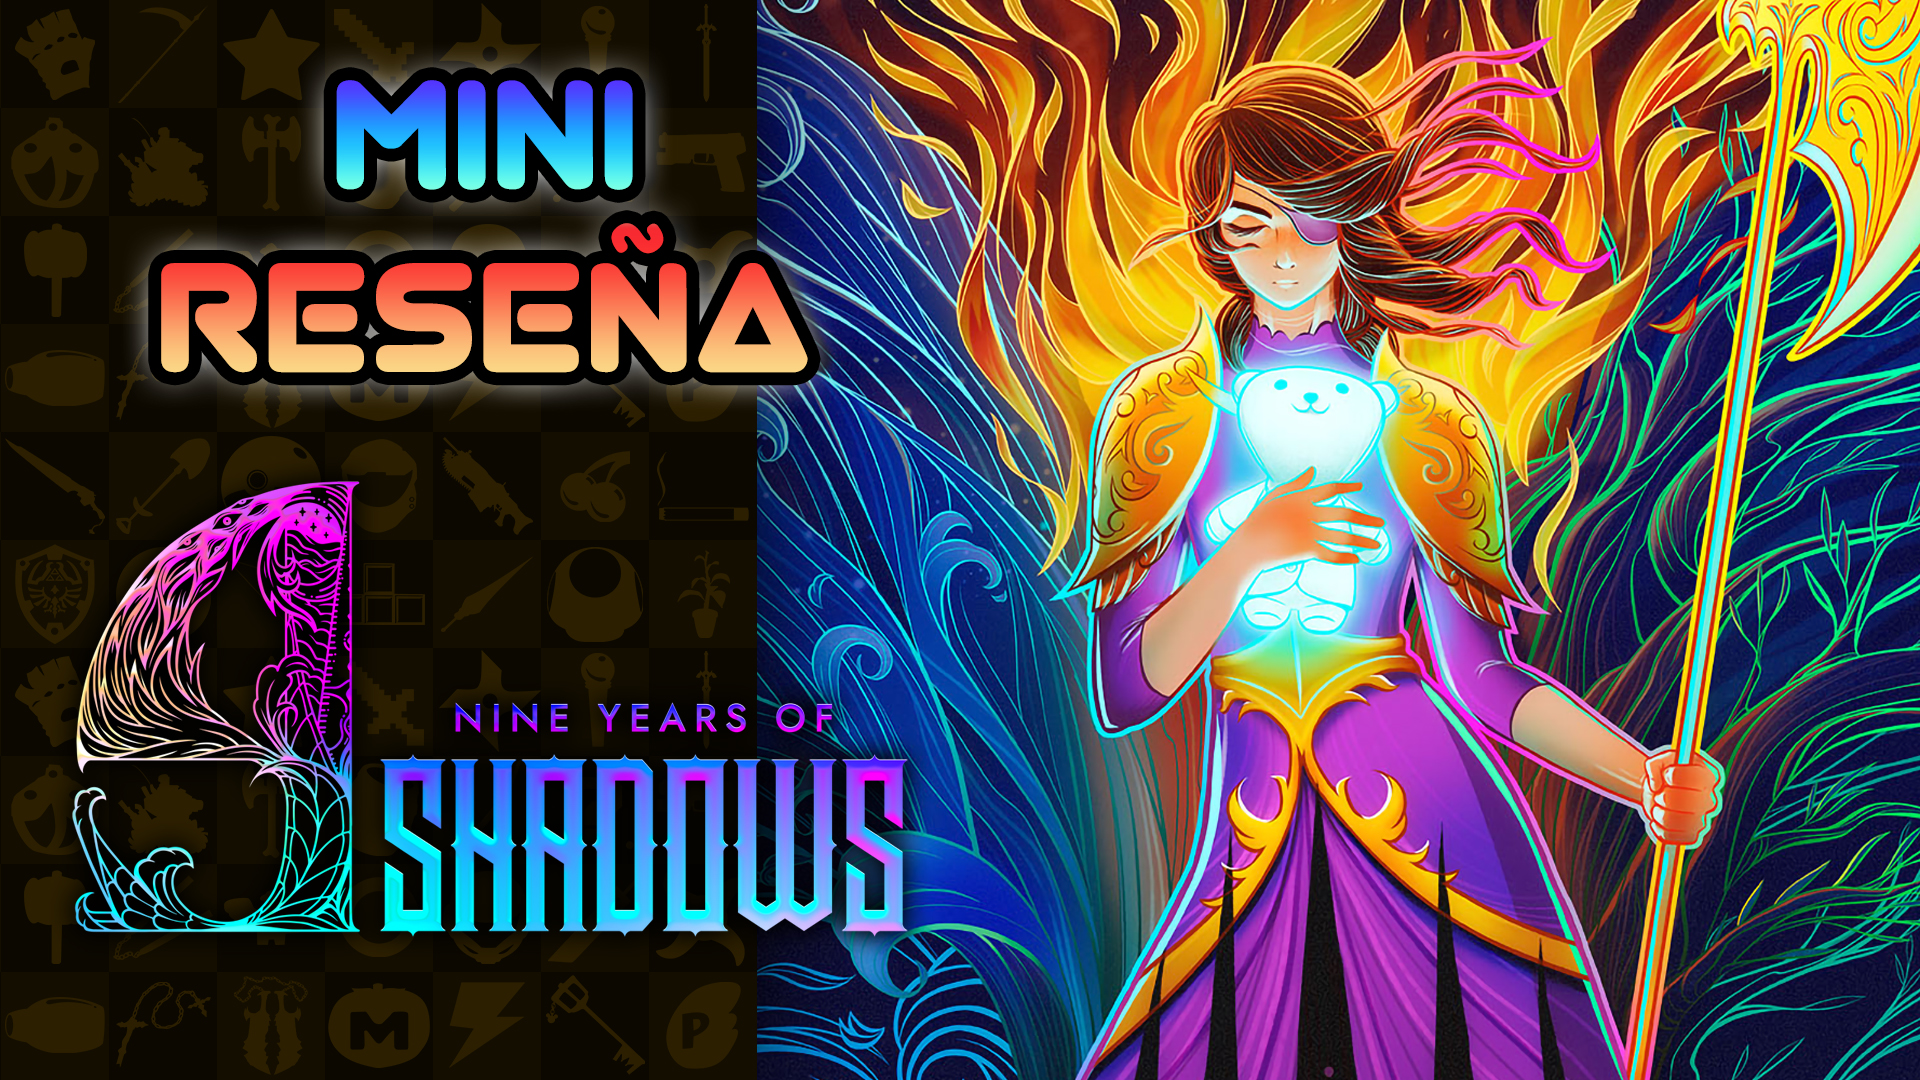 Mini Reseña 9 Years of Shadows – ¡Los videojuegos mexicanos siguen mejorando!